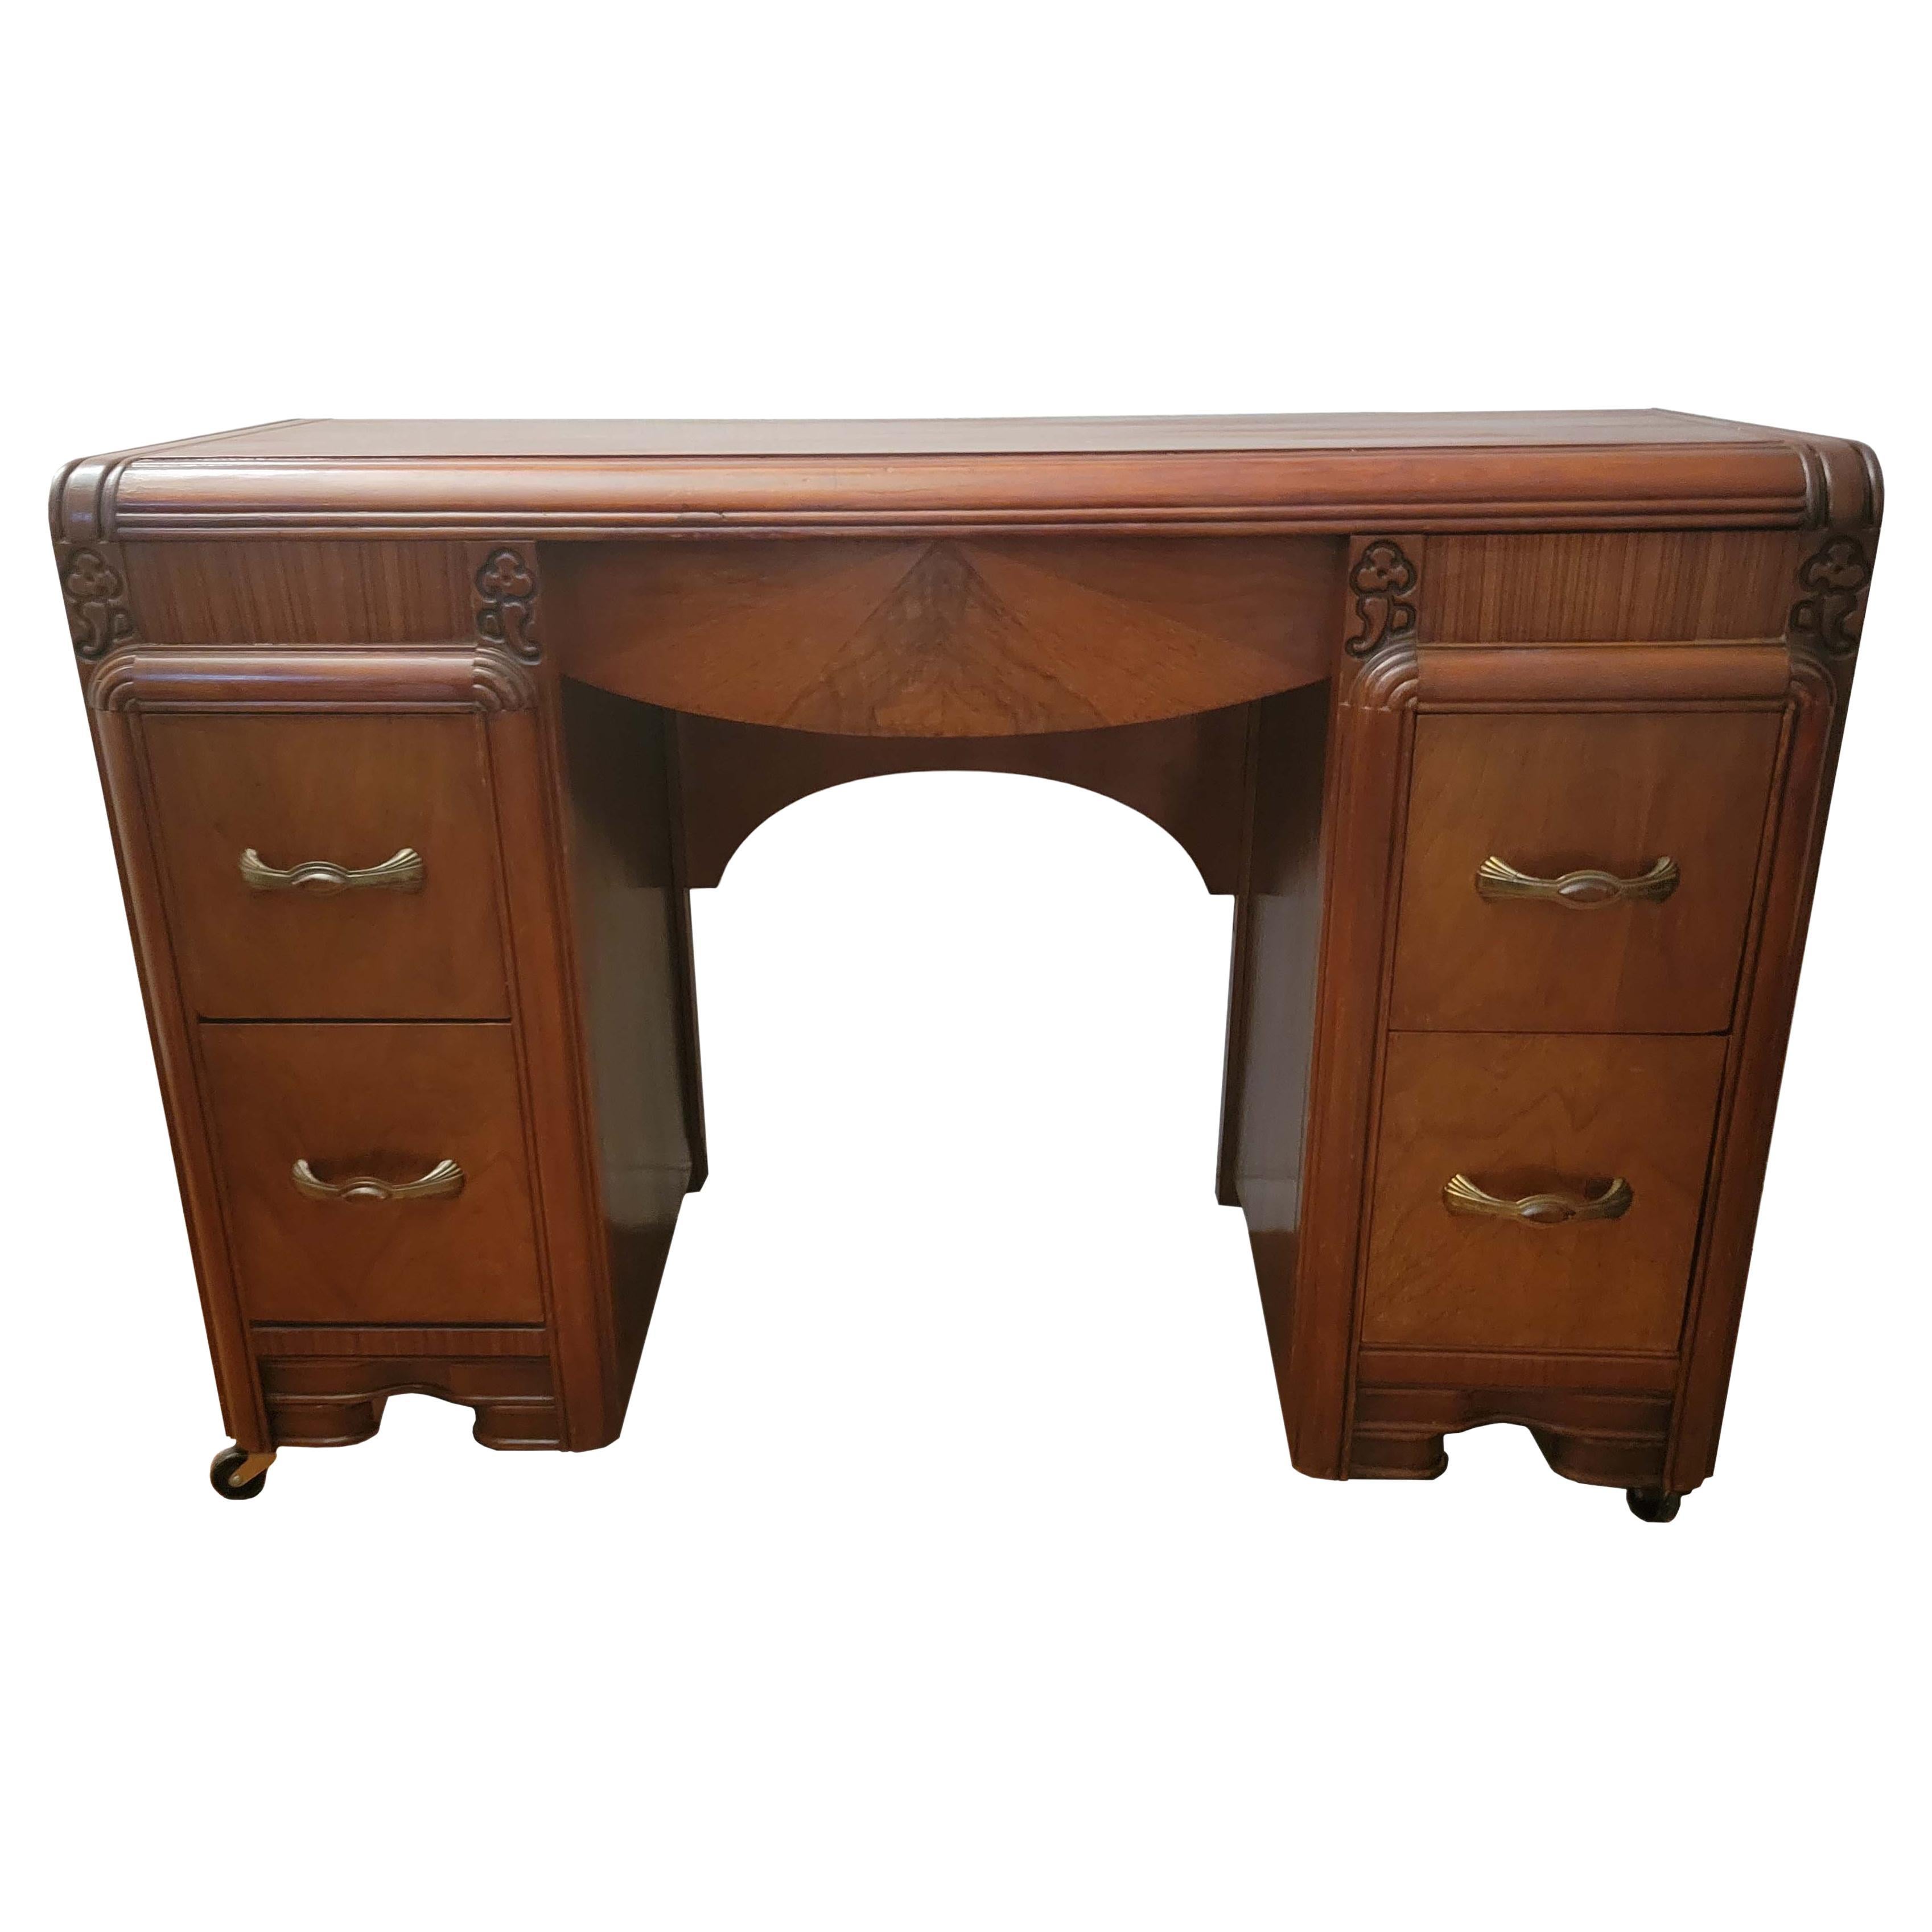 Antique Art Nouveau Vanity or Desk For Sale